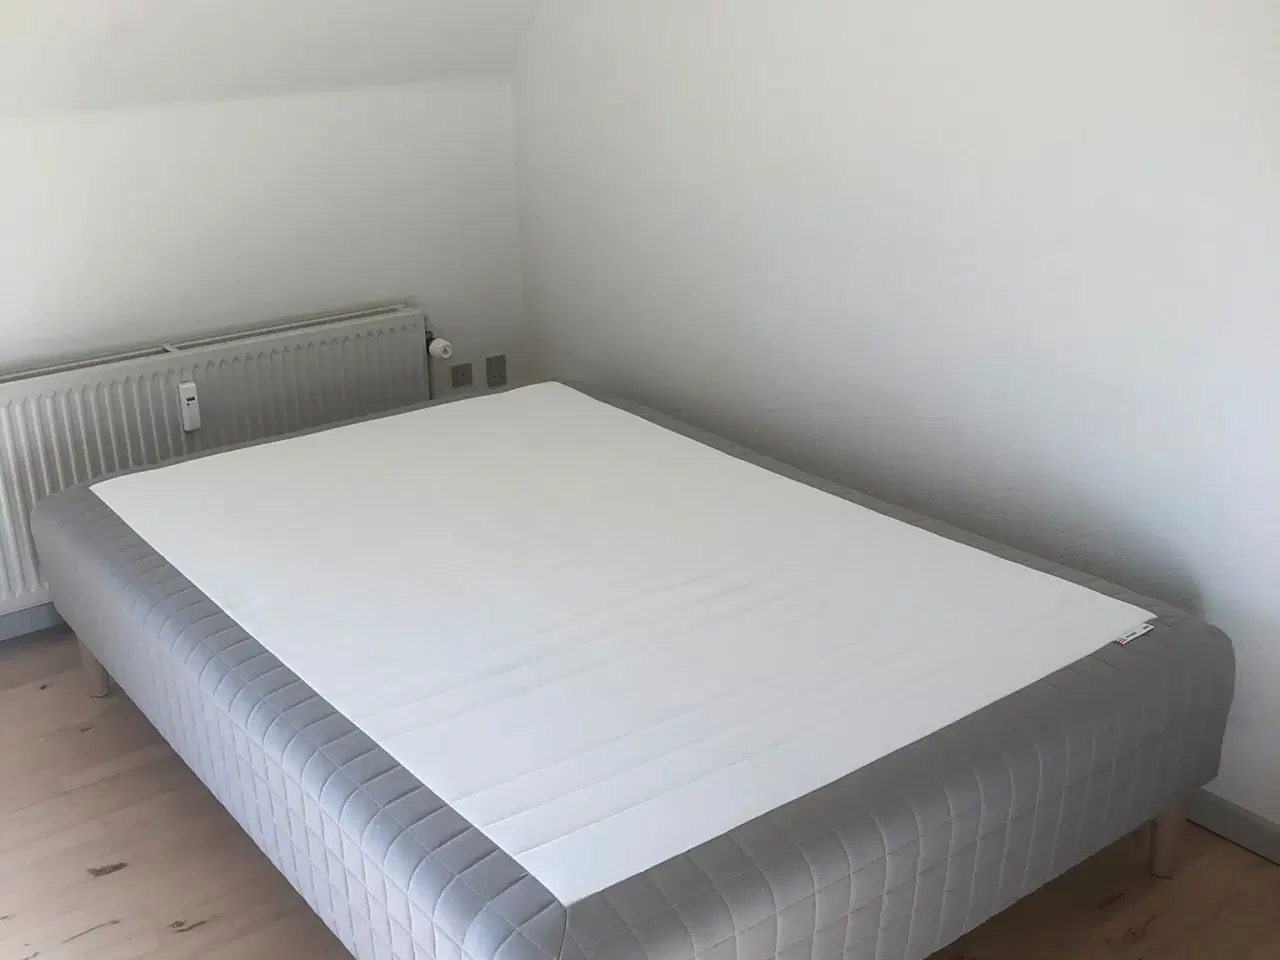 Billede 2 - Bed. Box mattress 140*200 with 5 legs